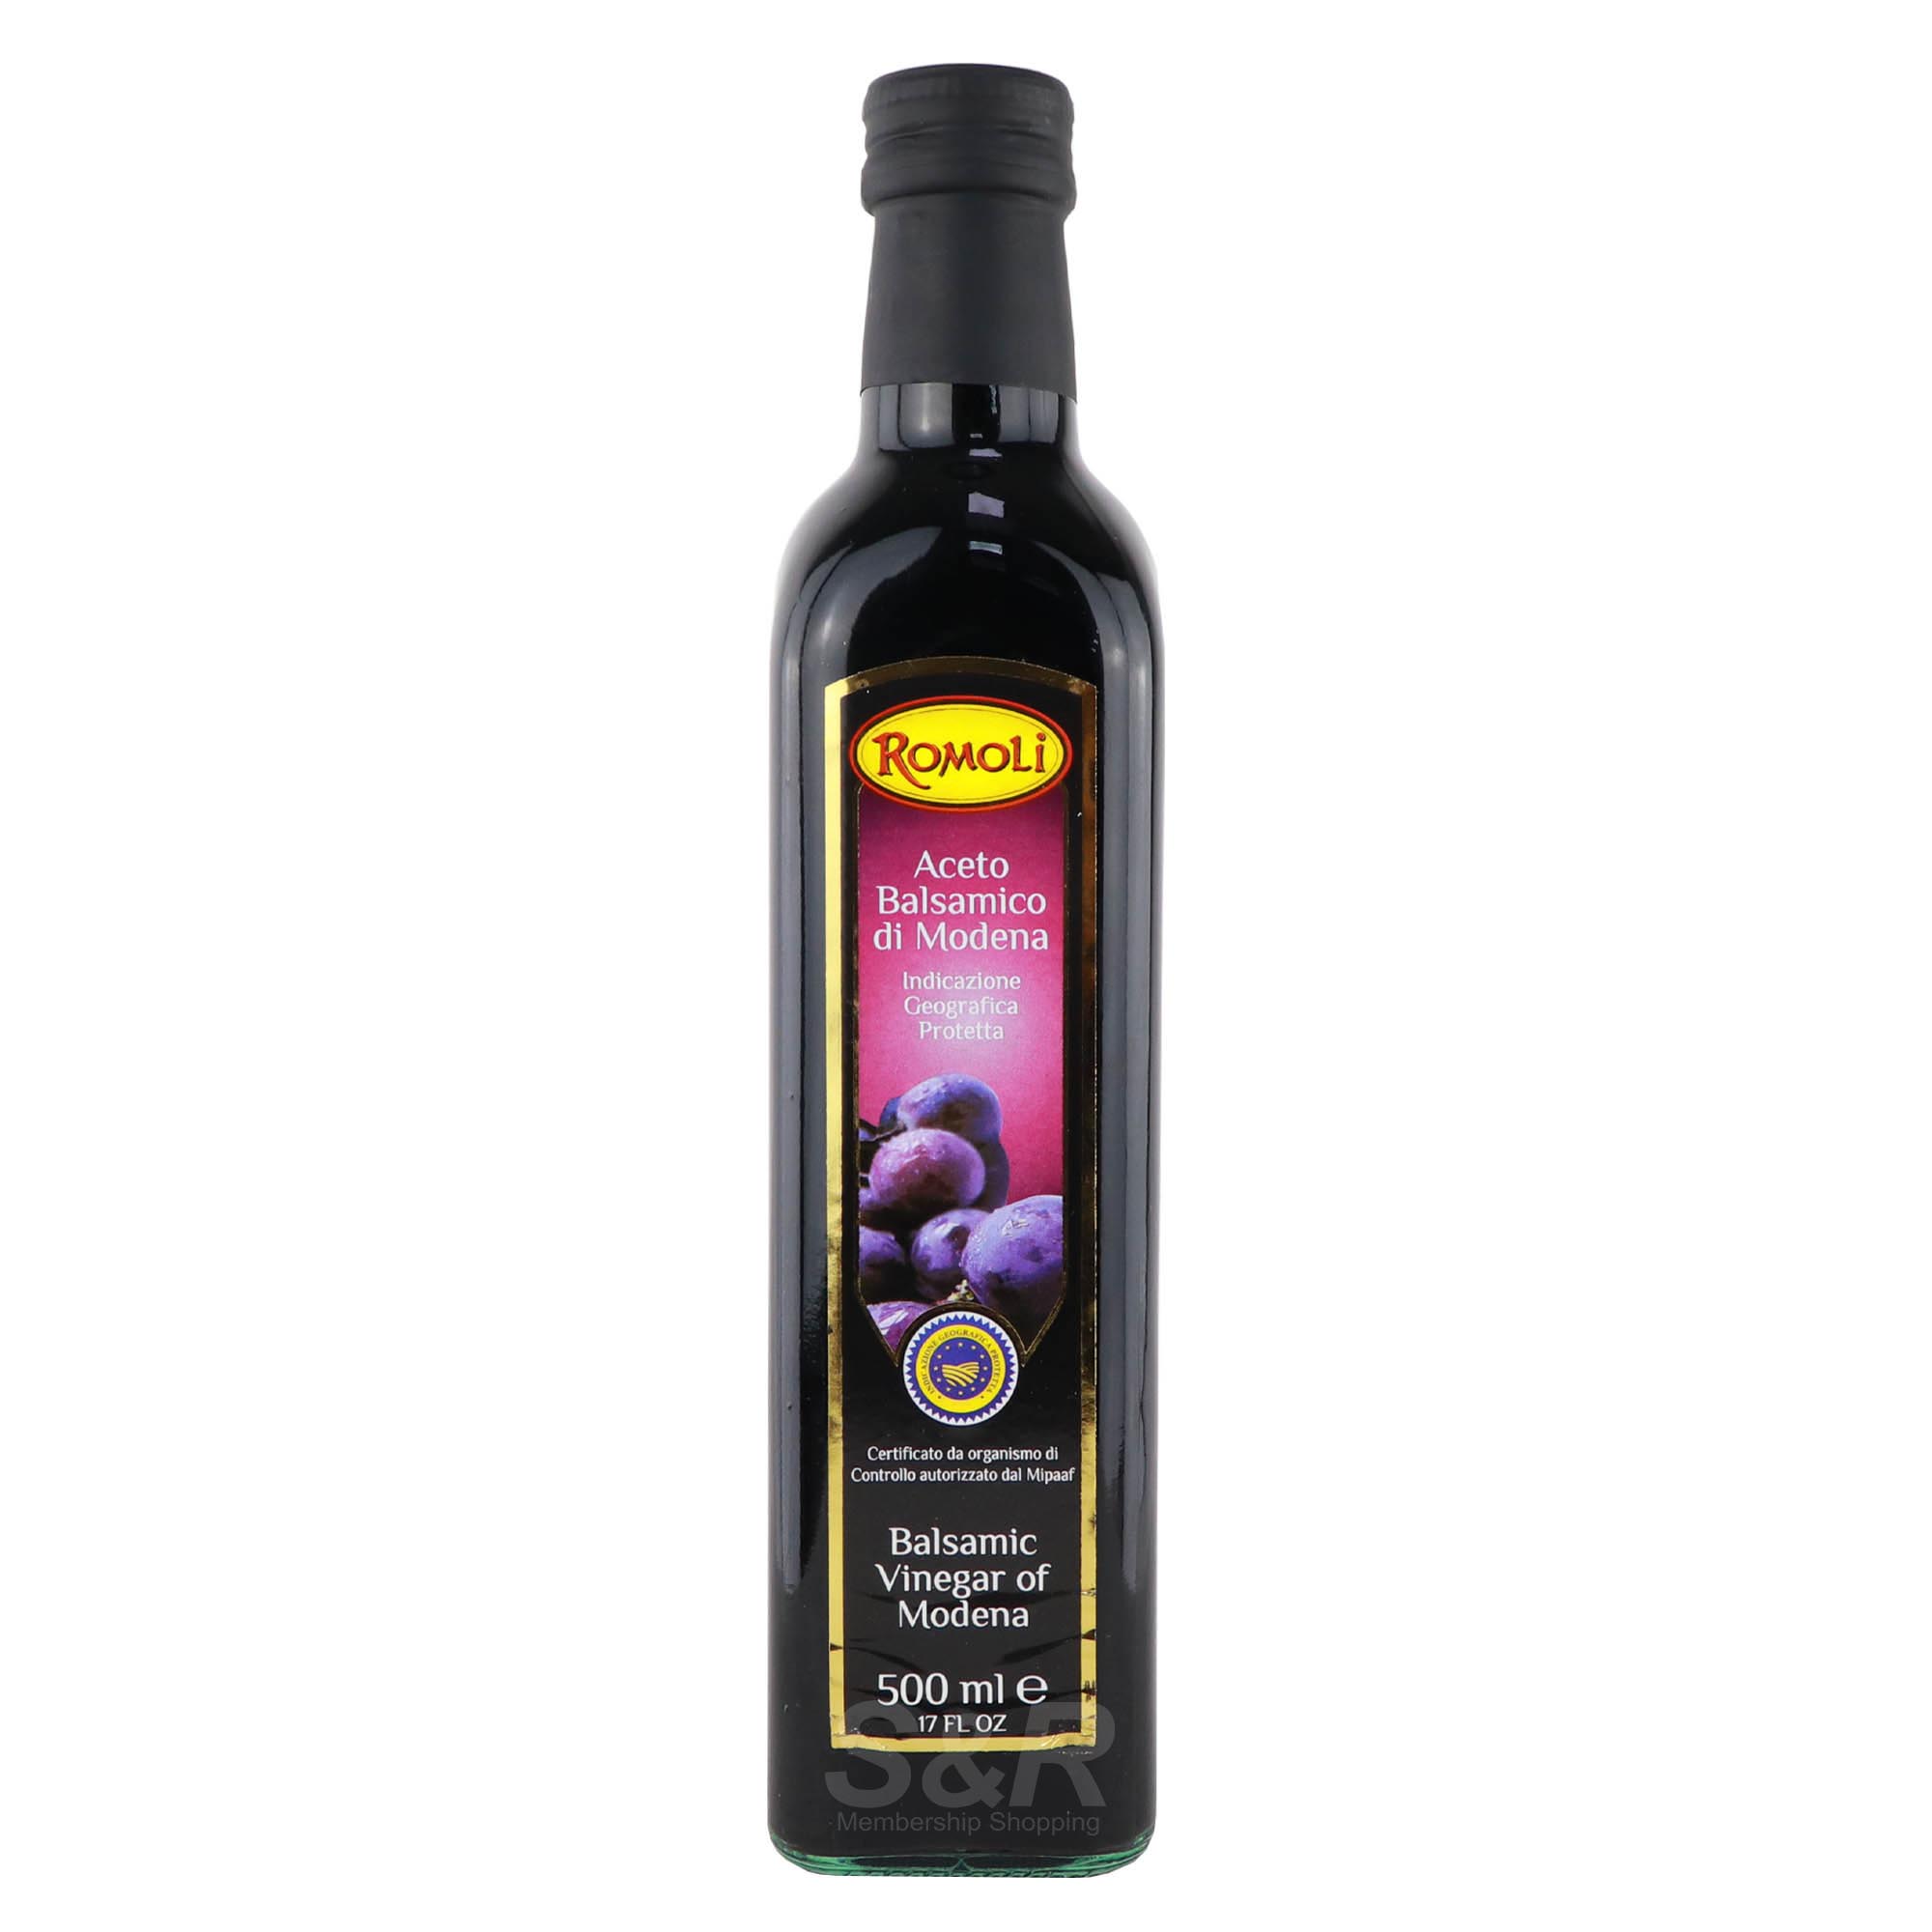 Romoli Grape Must Balsamic Vinegar of Modena 500mL